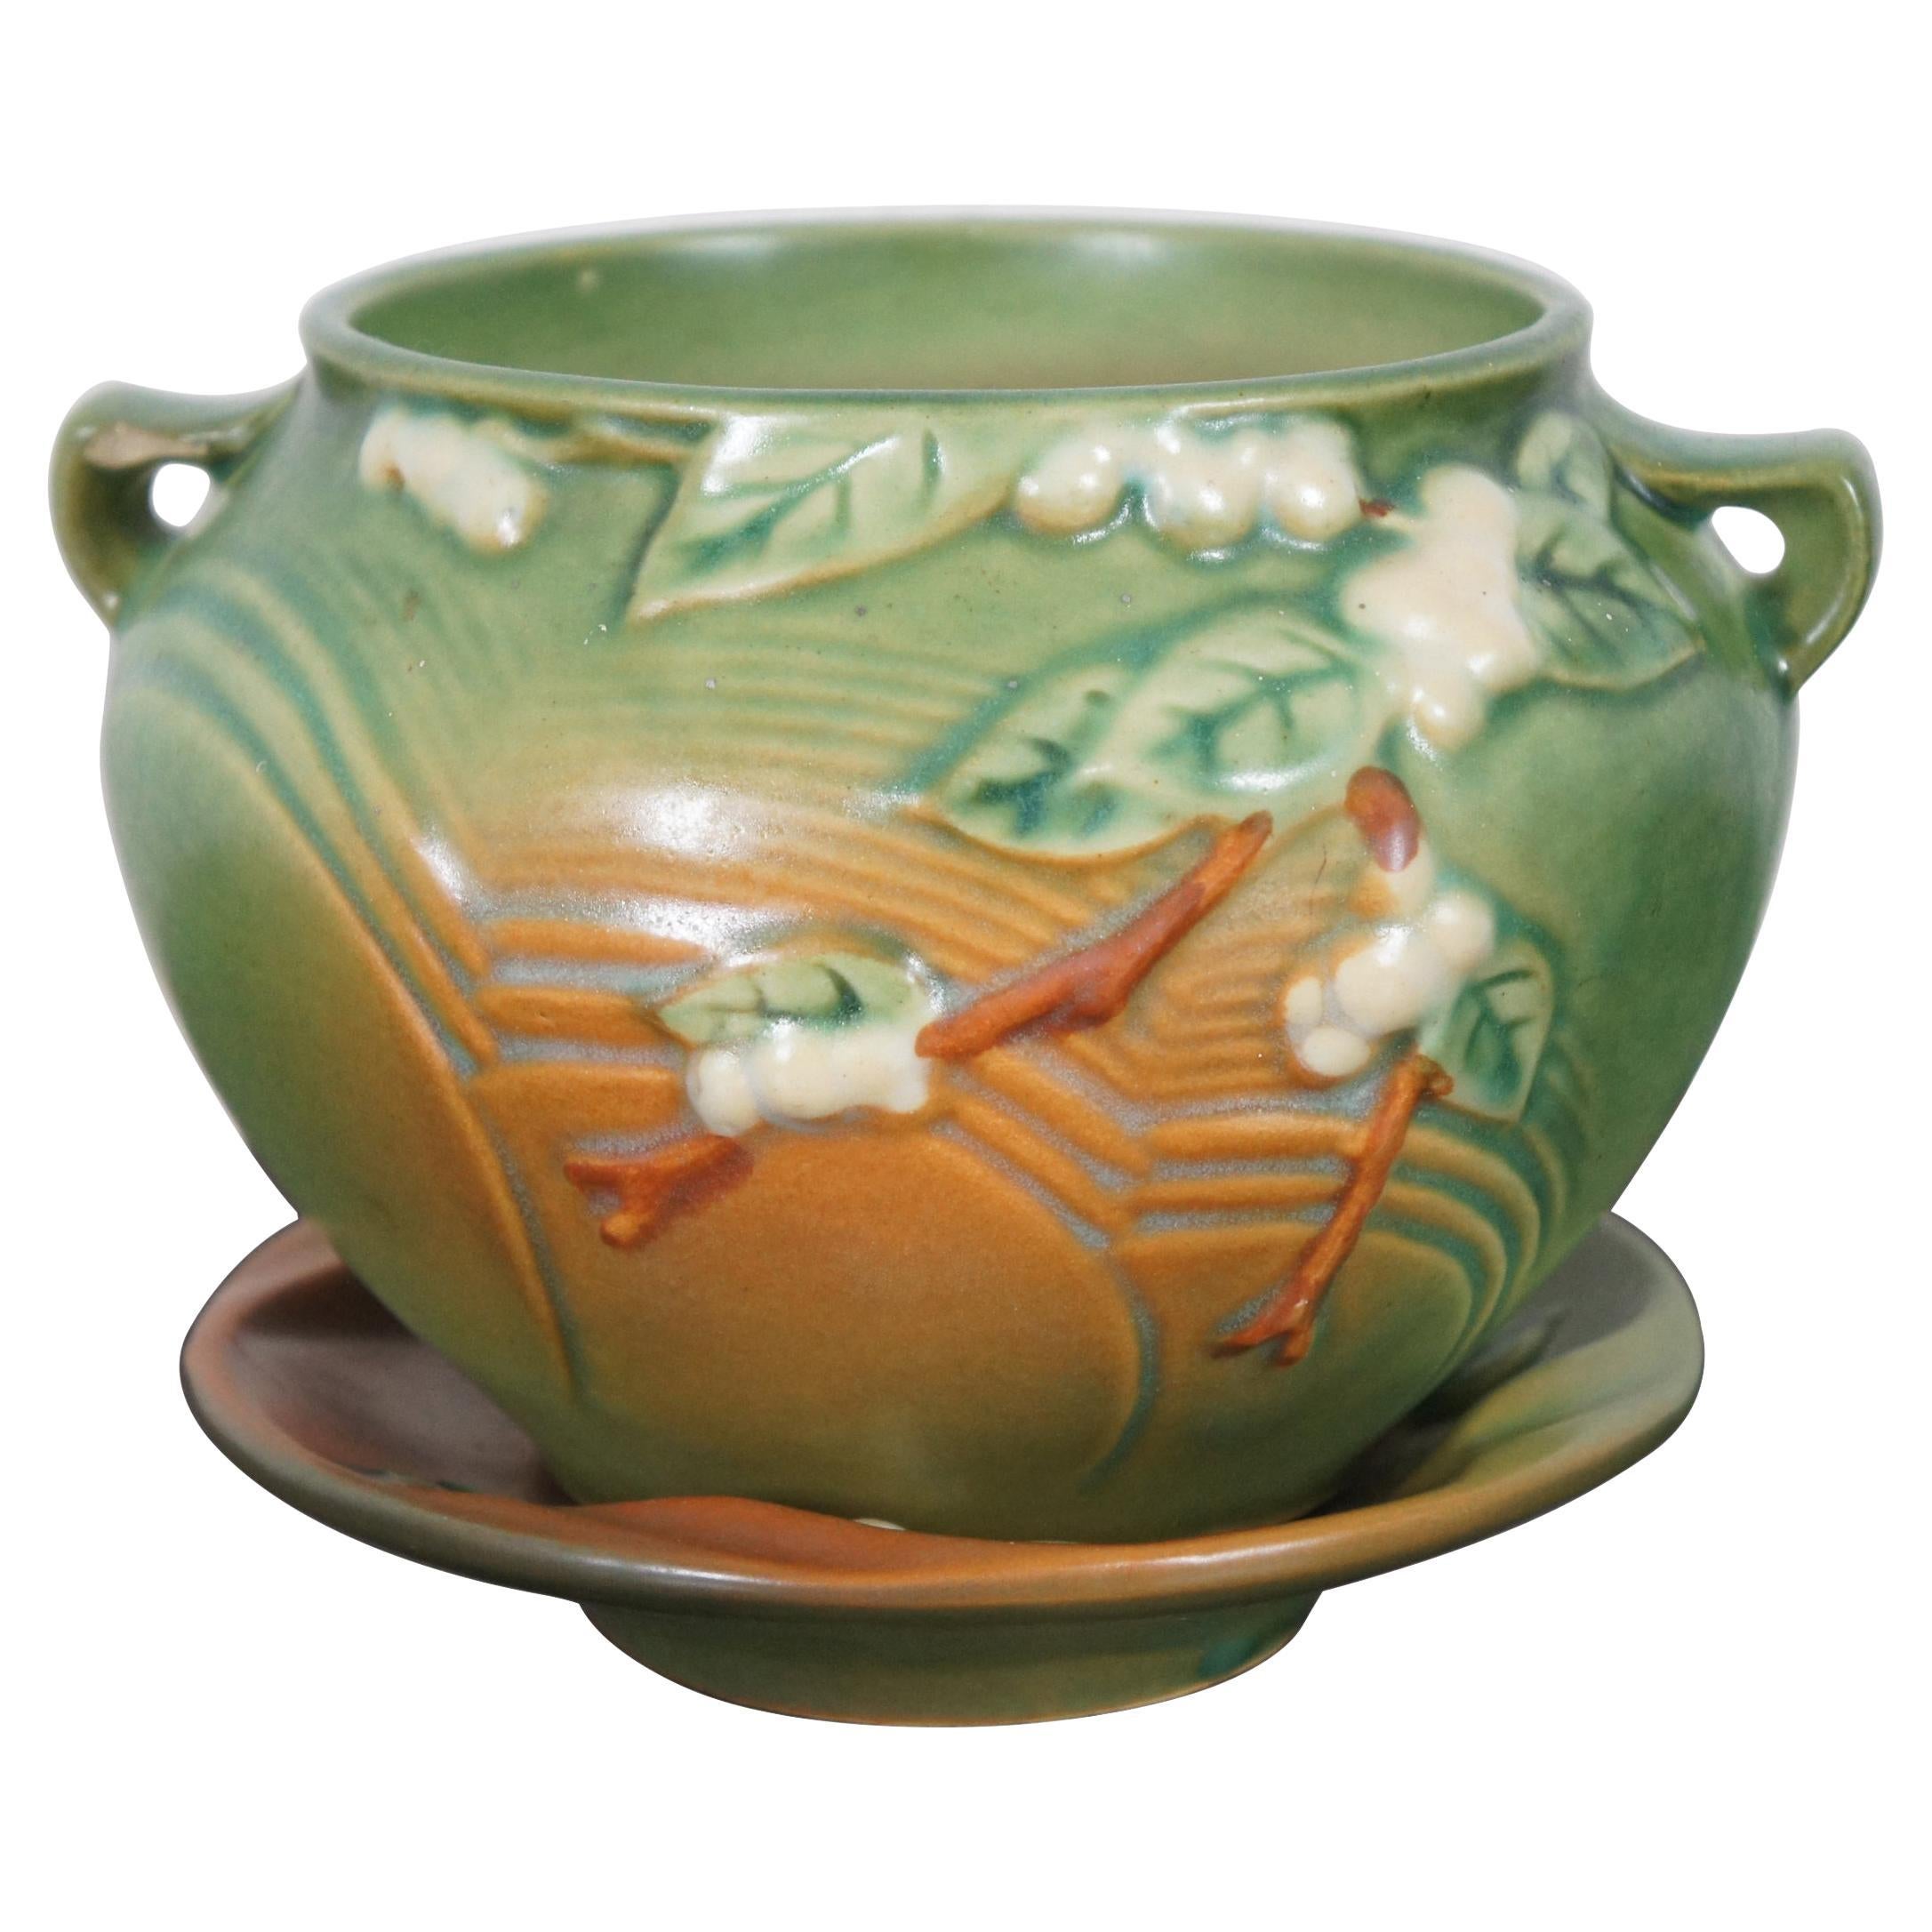 2 Vintage Roseville Pottery IJ-4 Fern Green Snowberry Planter Vase & Dish